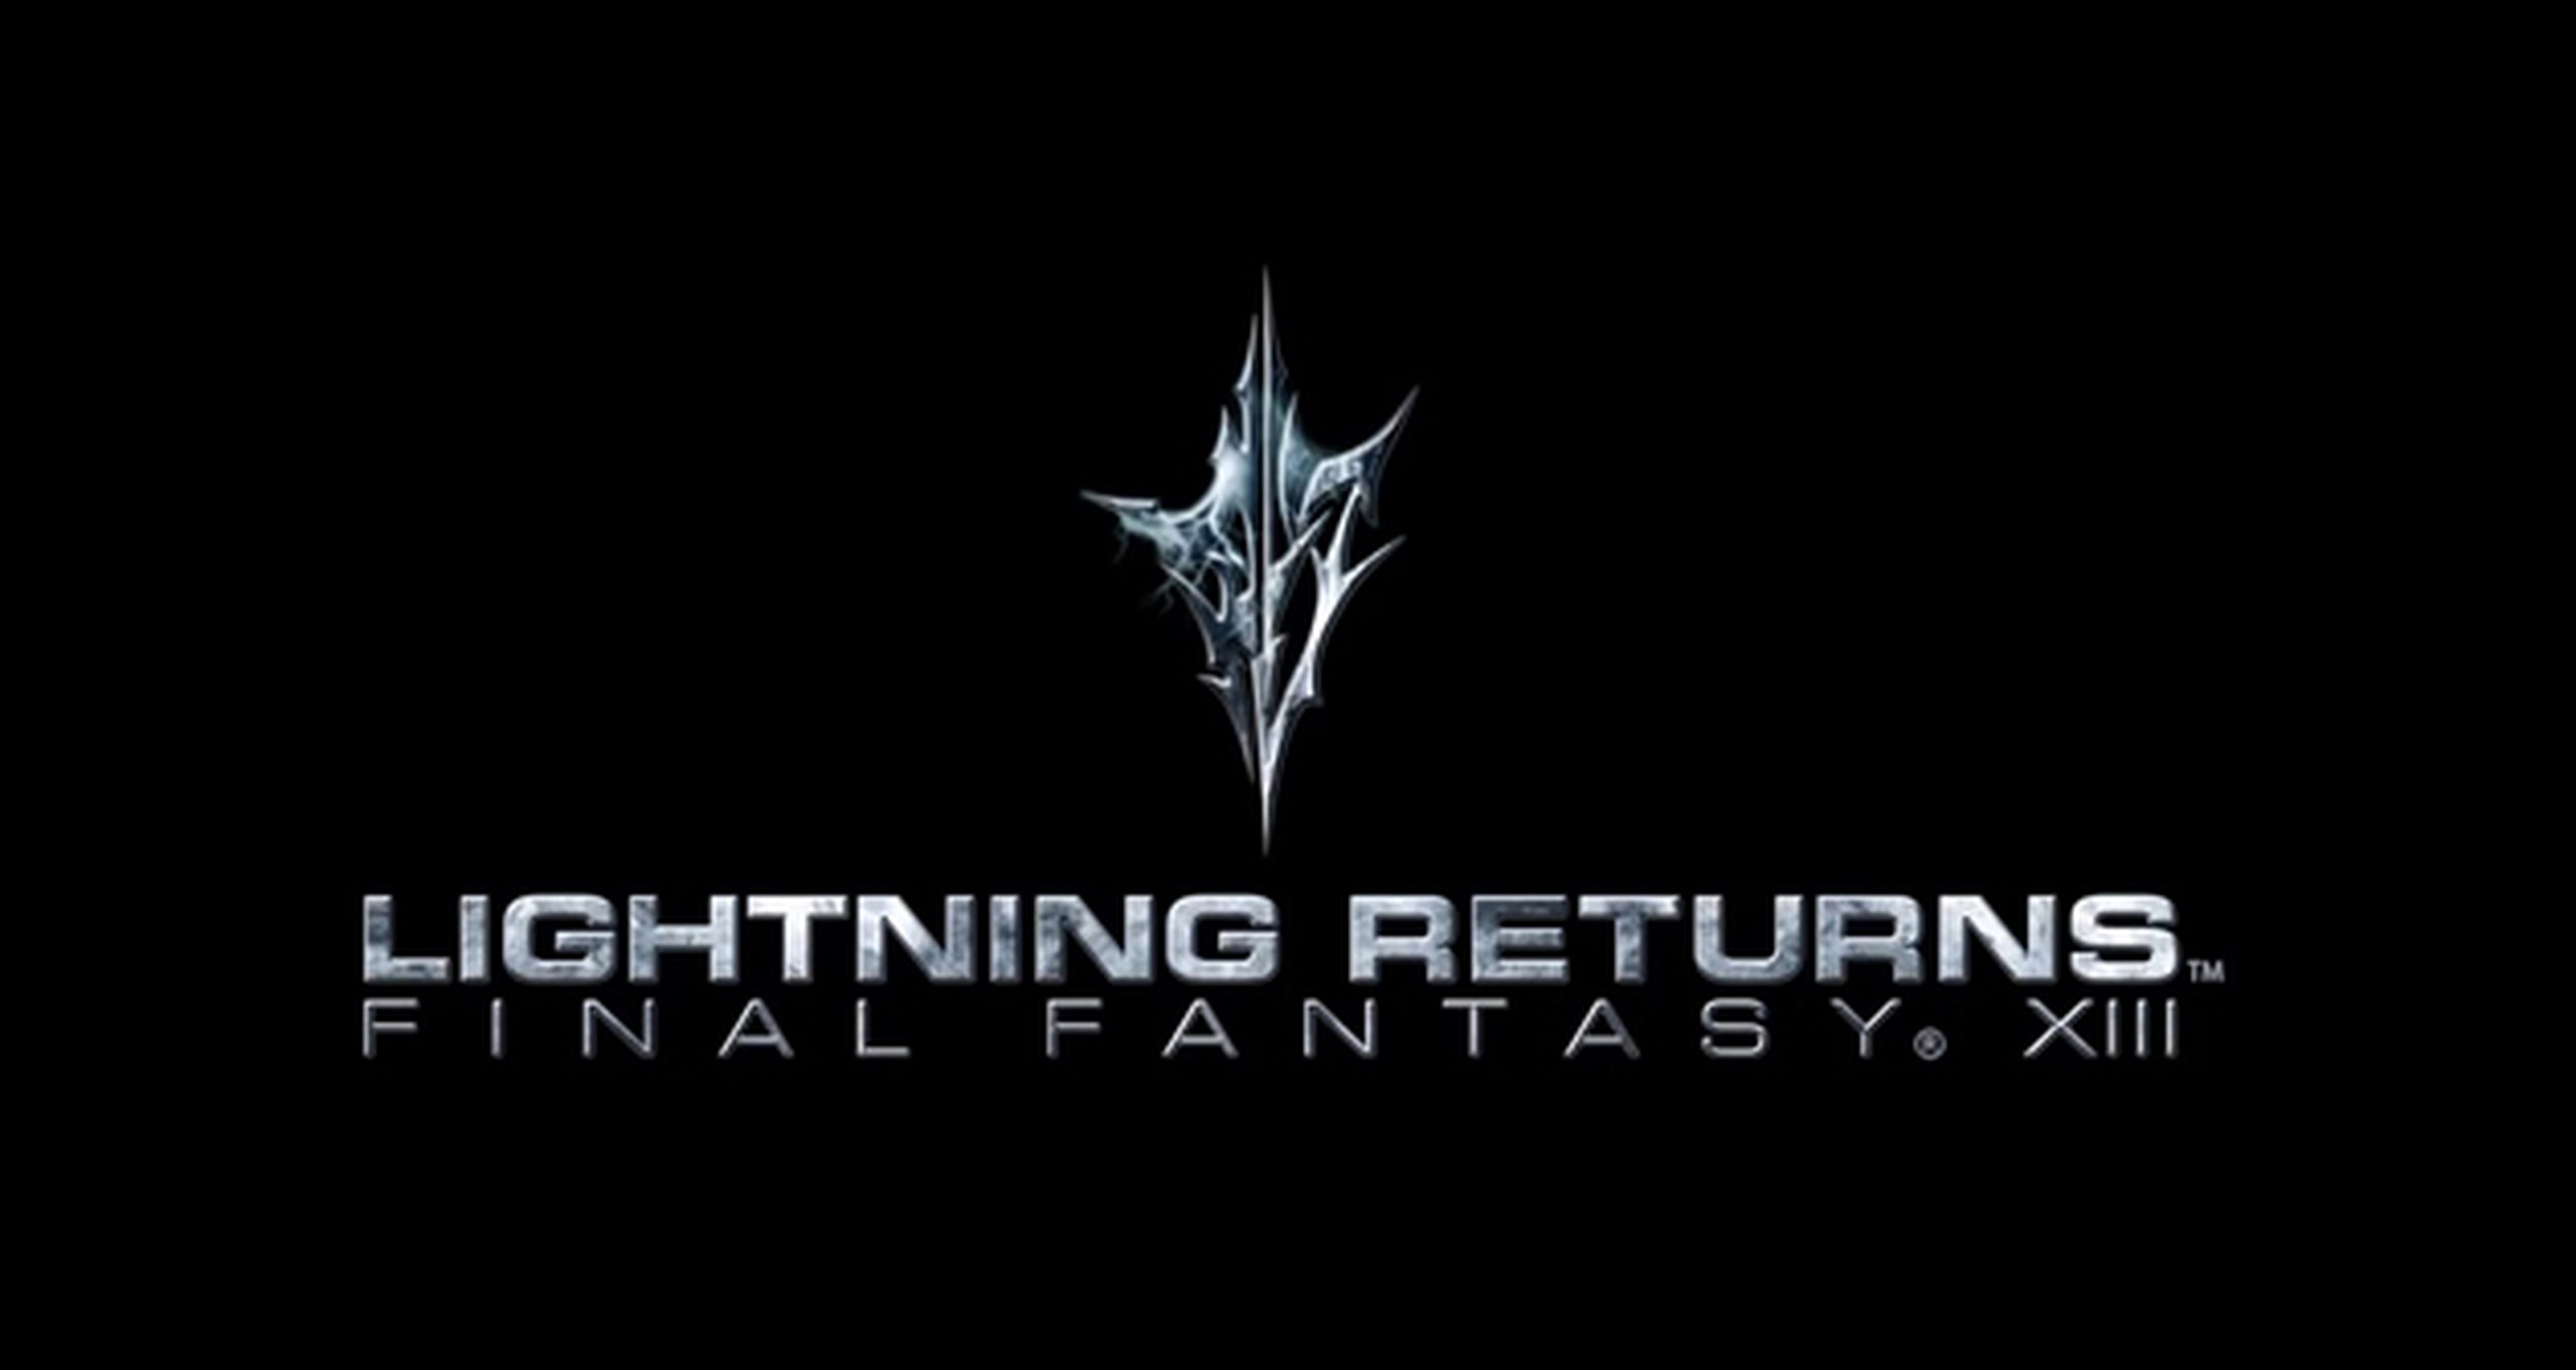 Más detalles de Final Fantasy XIII: Lightning Returns